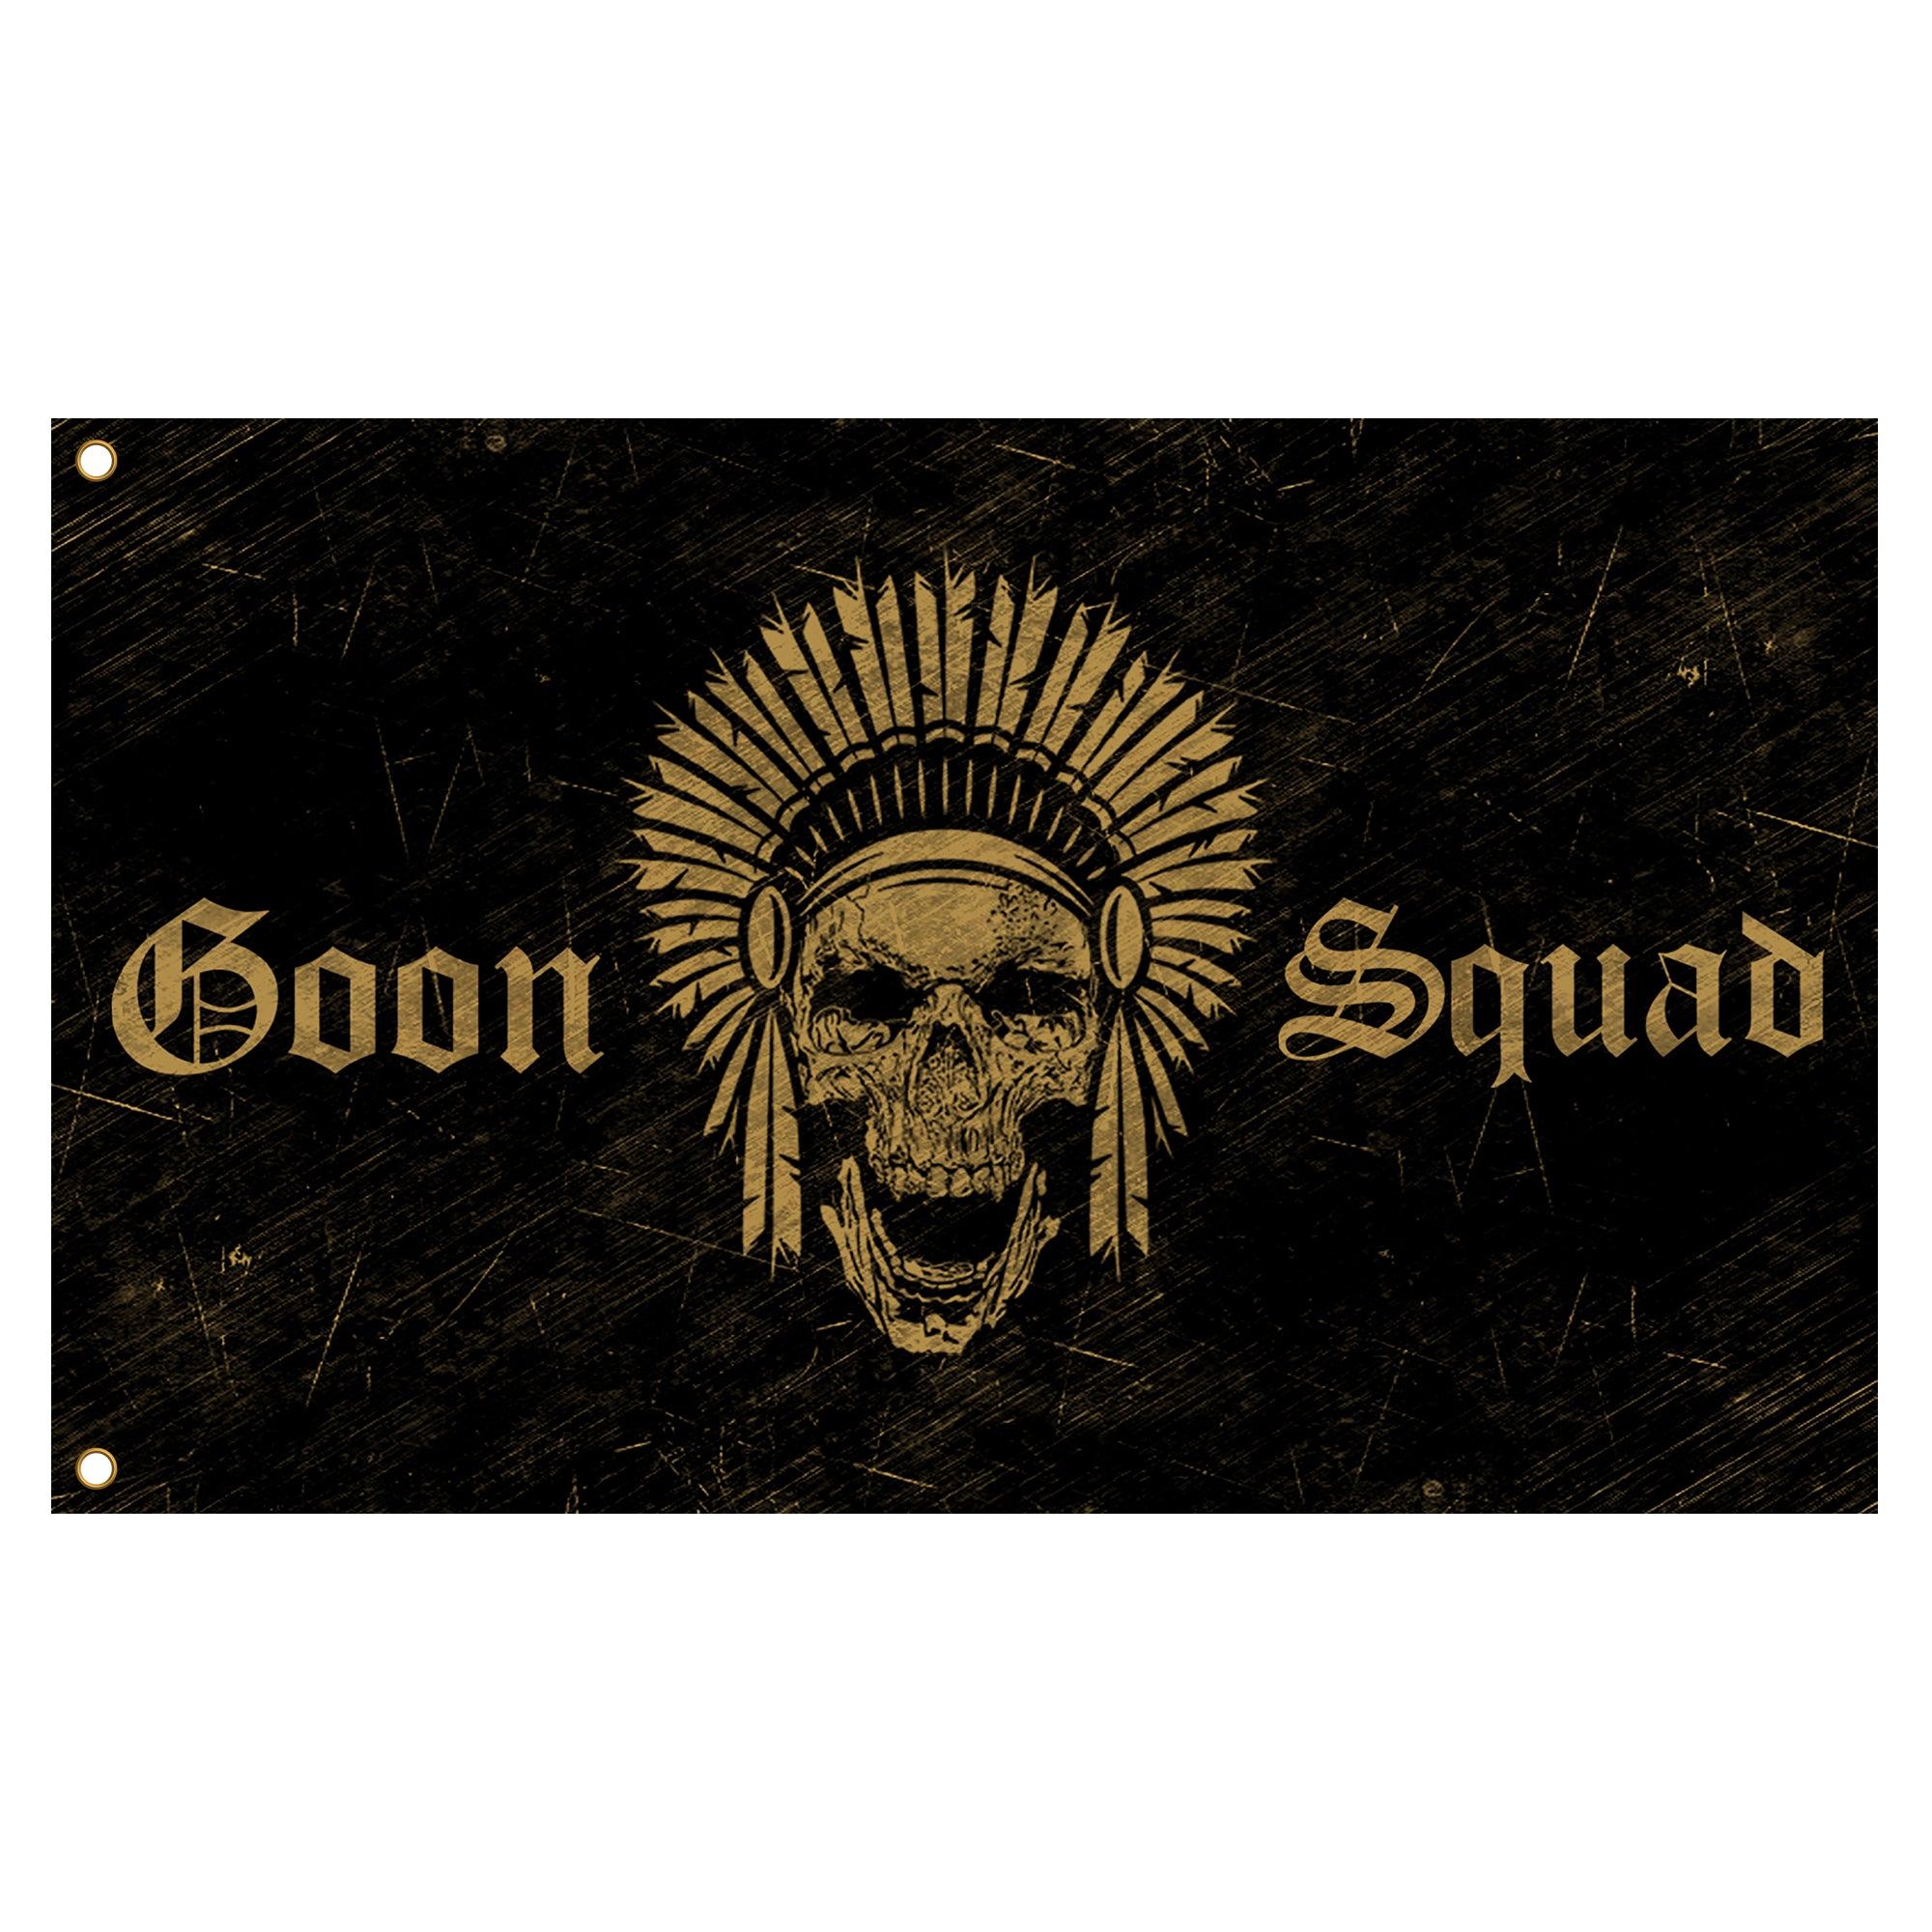 goon squad or die